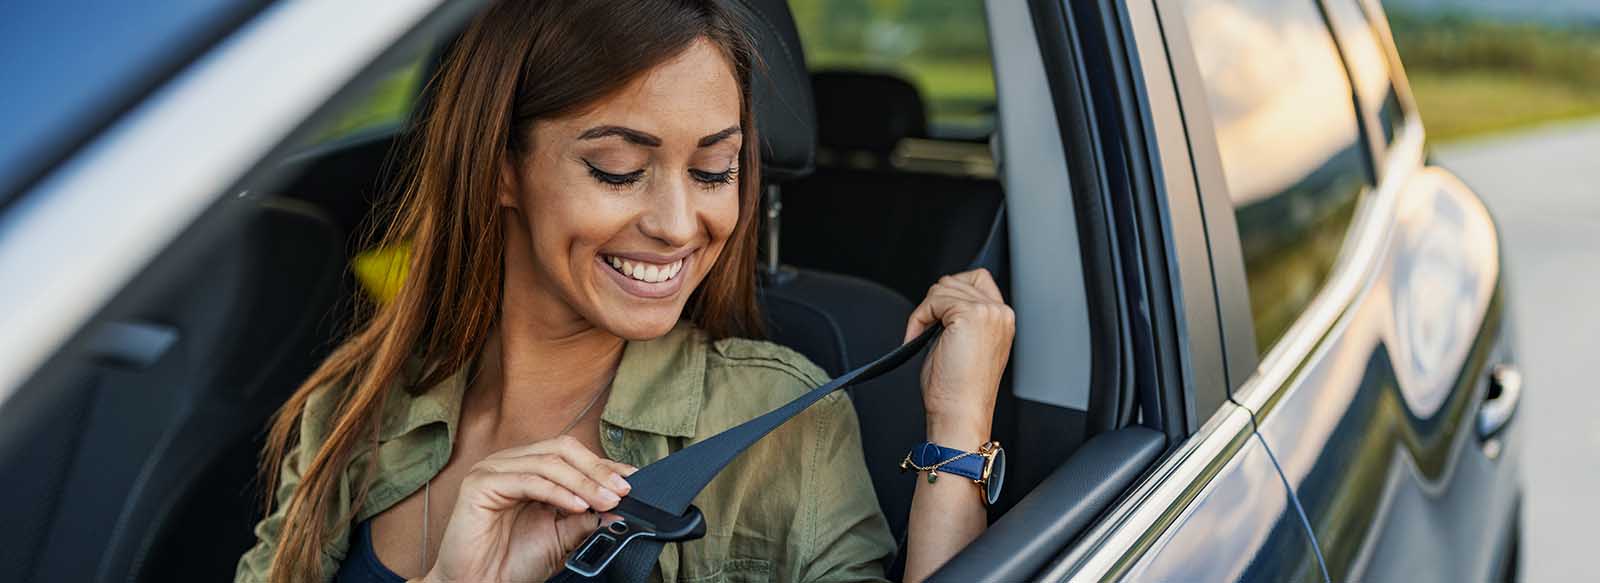 Women in car buckling her seatbelt